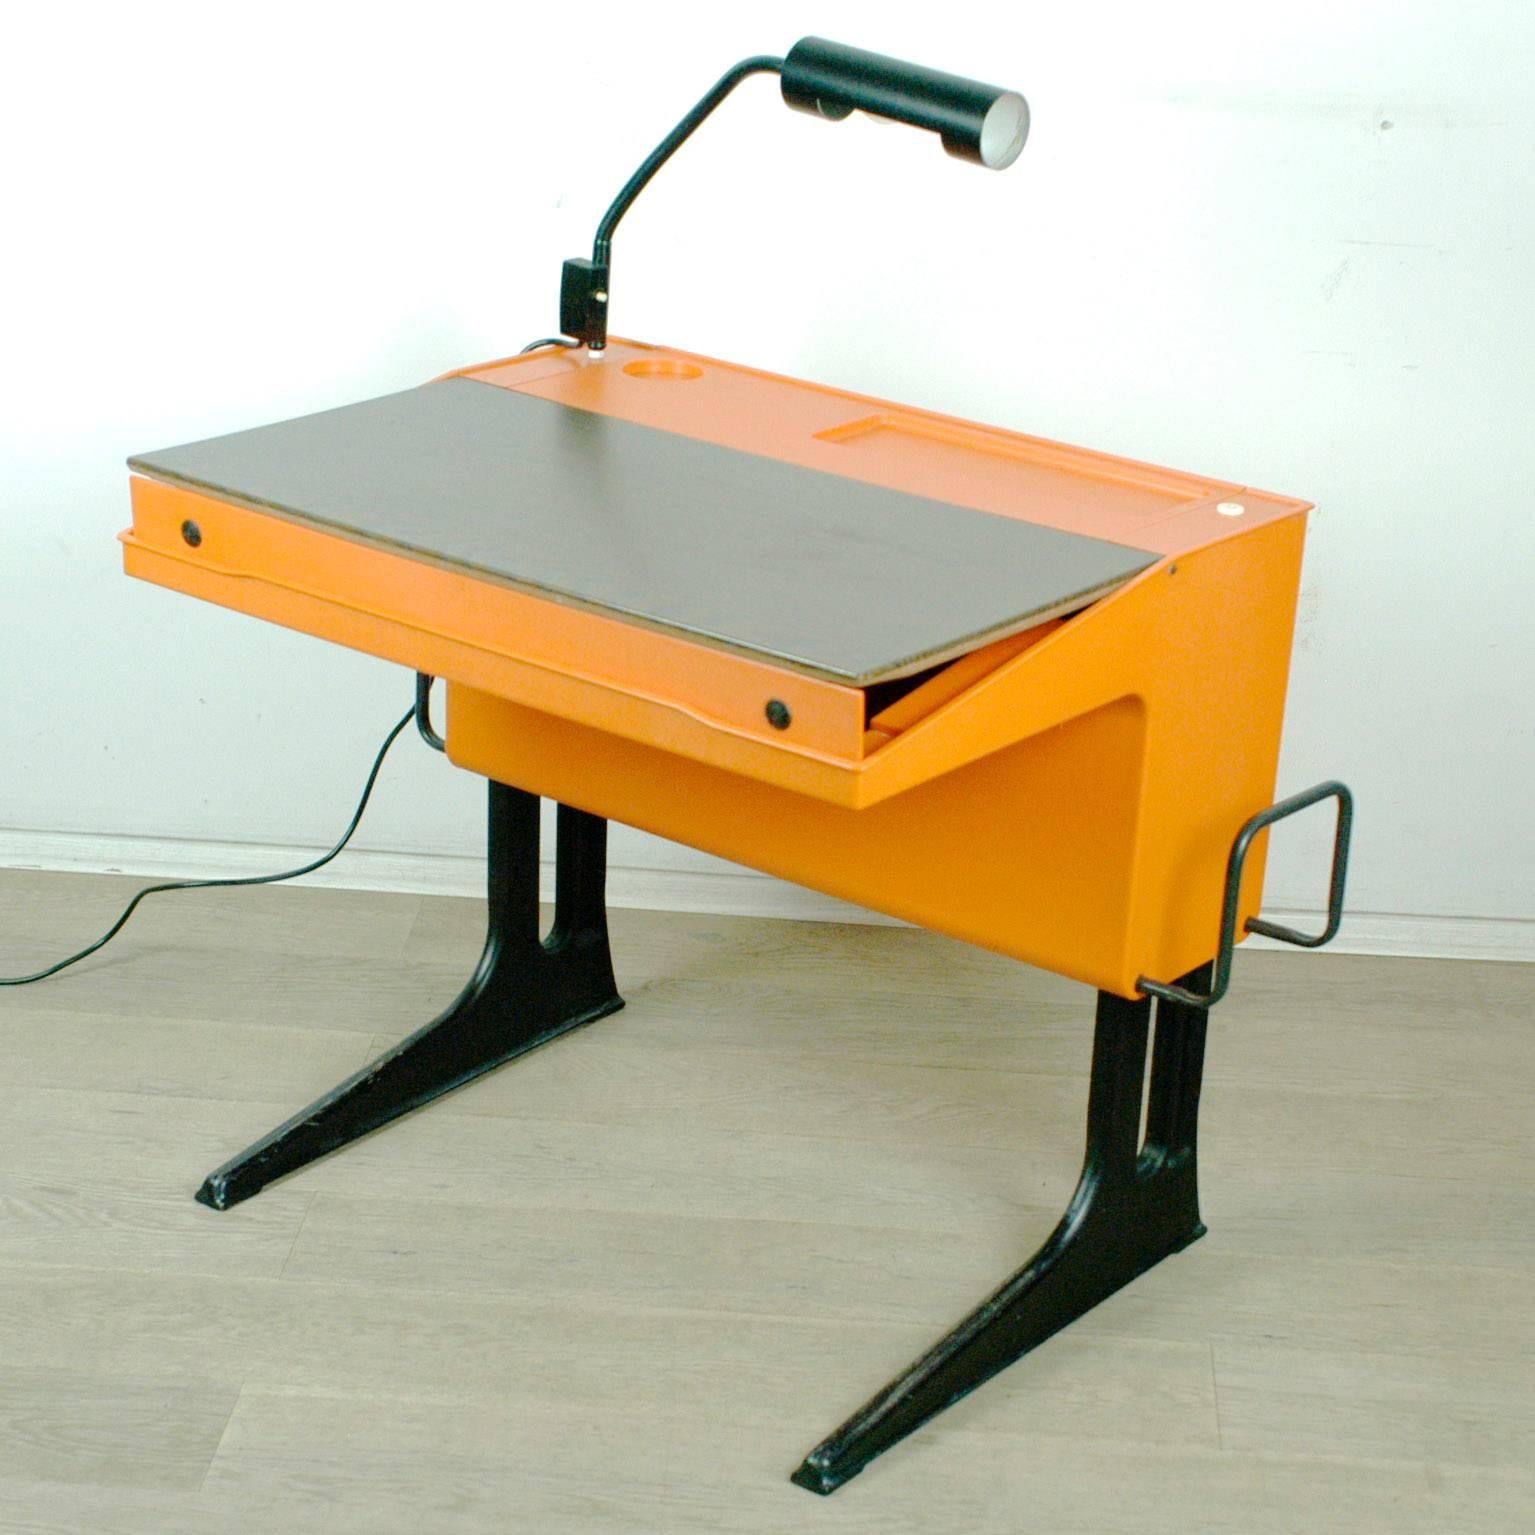 Height adjustable desk with desk light.